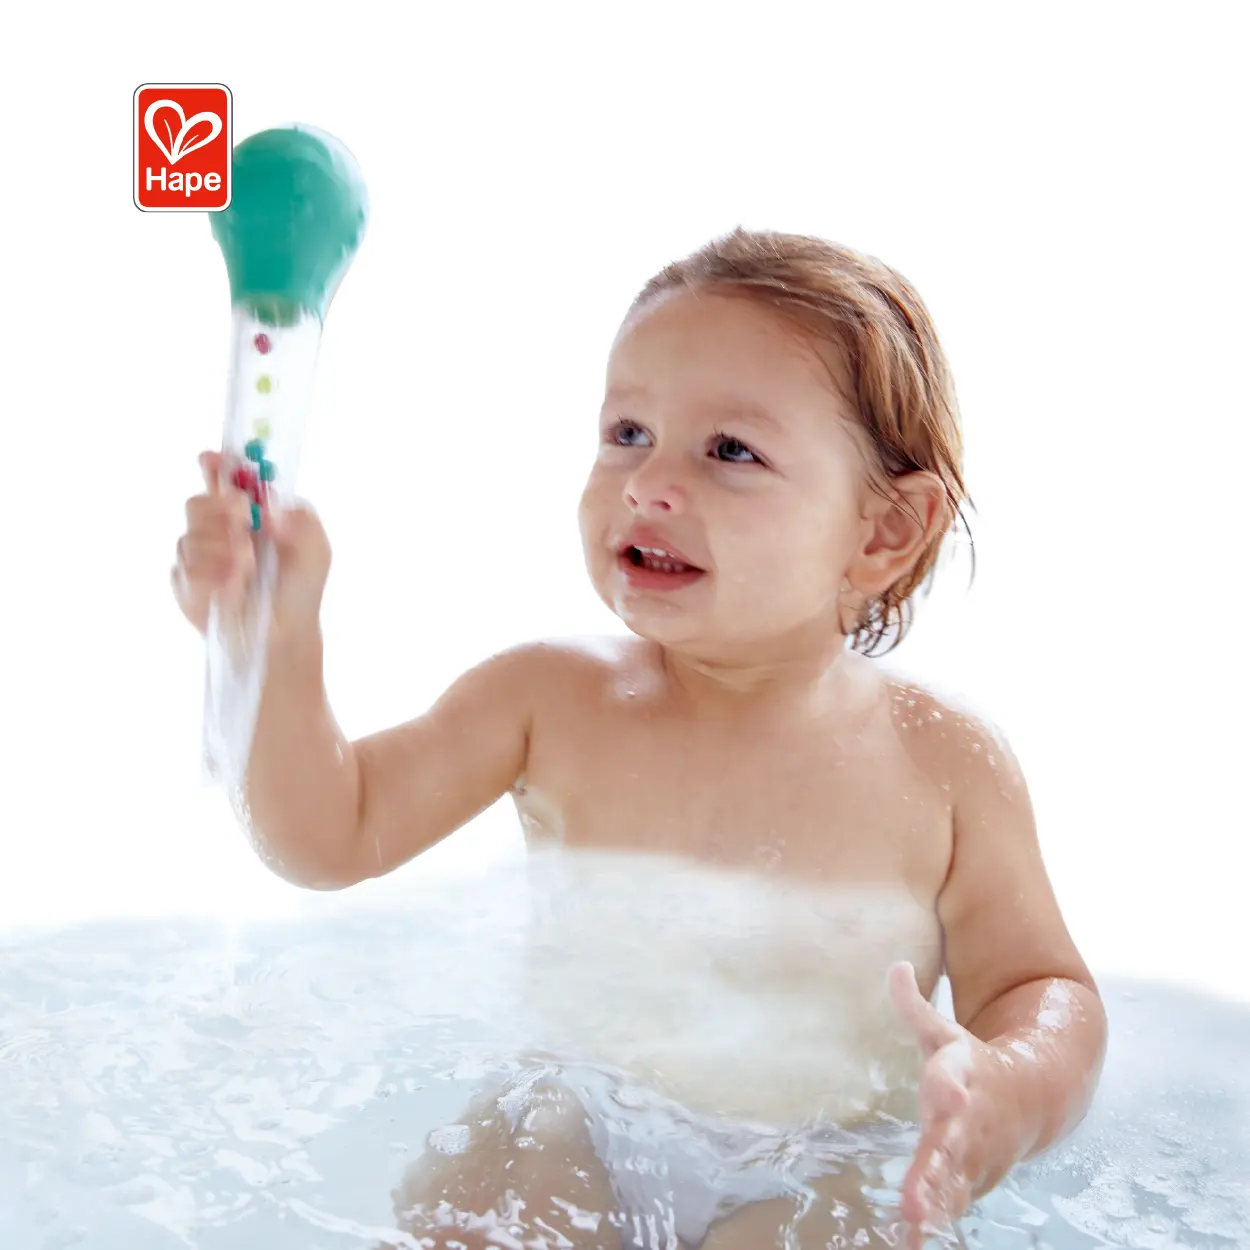 Mini Squirt Wasserbad Spiel Spielzeug Schwimmen Float Bades pielzeug Pool Squeeze & Squirt Baby Spielzeug